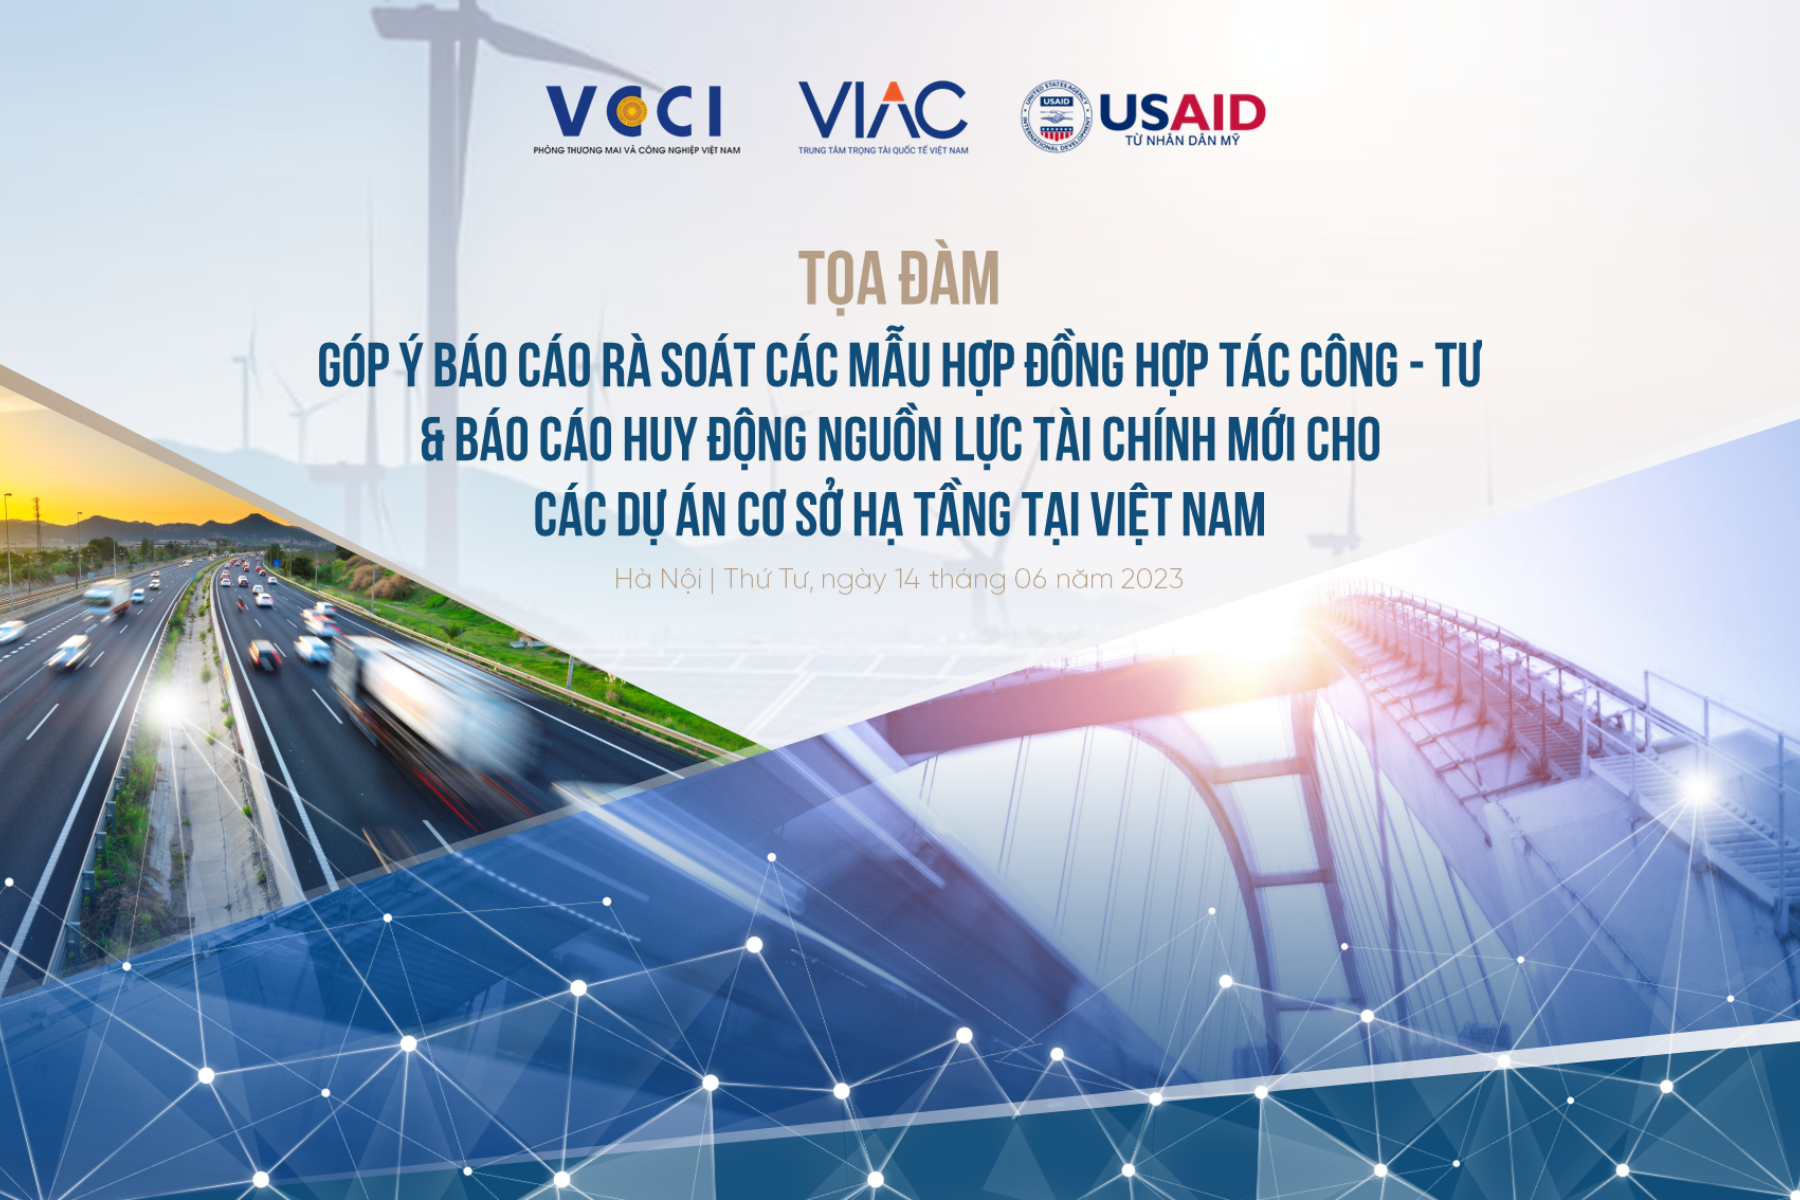 Tọa đàm góp ý báo cáo rà soát các mẫu hợp đồng hợp tác công - tư và báo cáo huy động nguồn lực tài chính mới cho các dự án cơ sở hạ tầng tại Việt Nam.